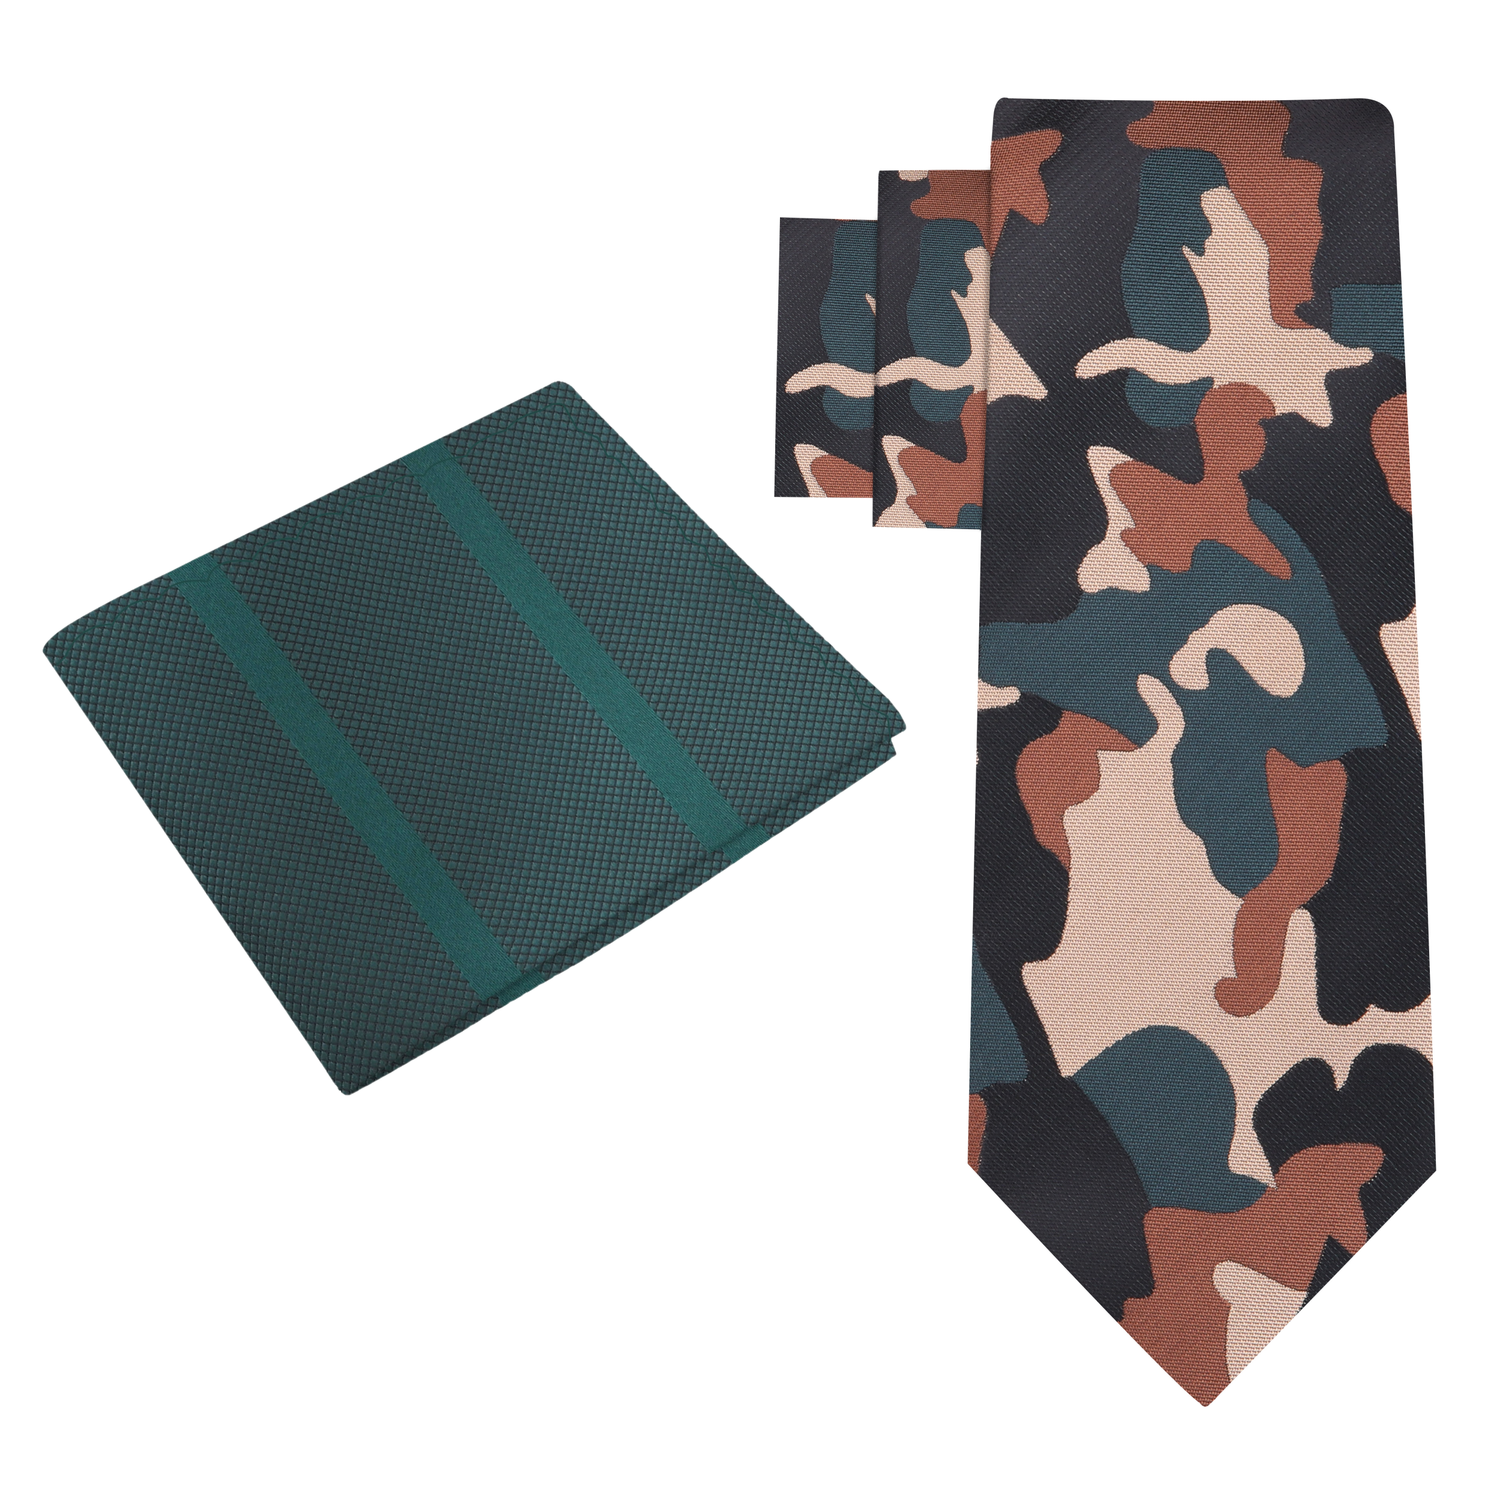 Alt View: Brown, Black, Green Camouflage Necktie and Dark Green Necktie